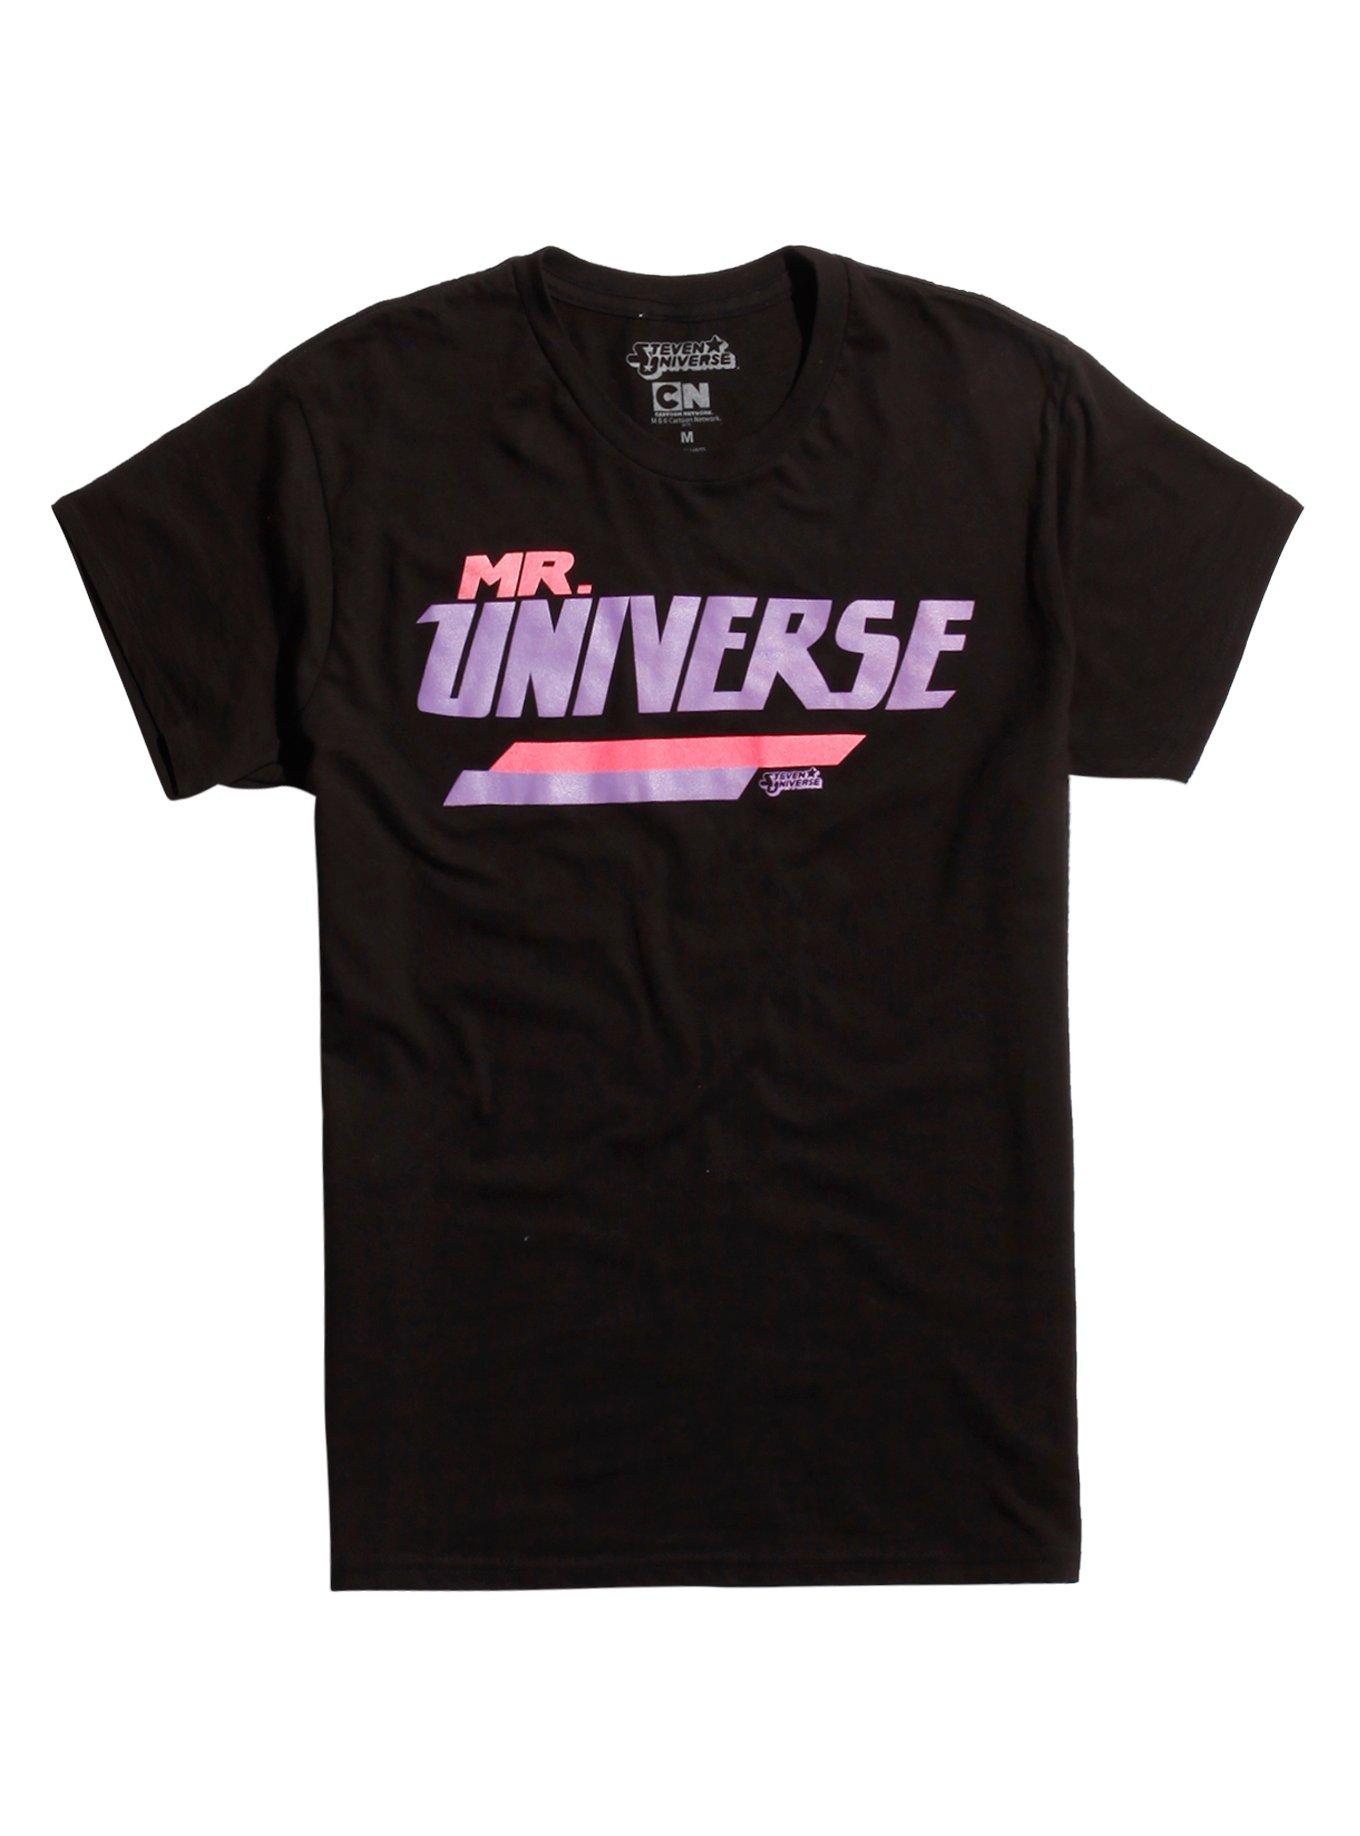 Steven Universe Mr. Universe T-Shirt | Hot Topic